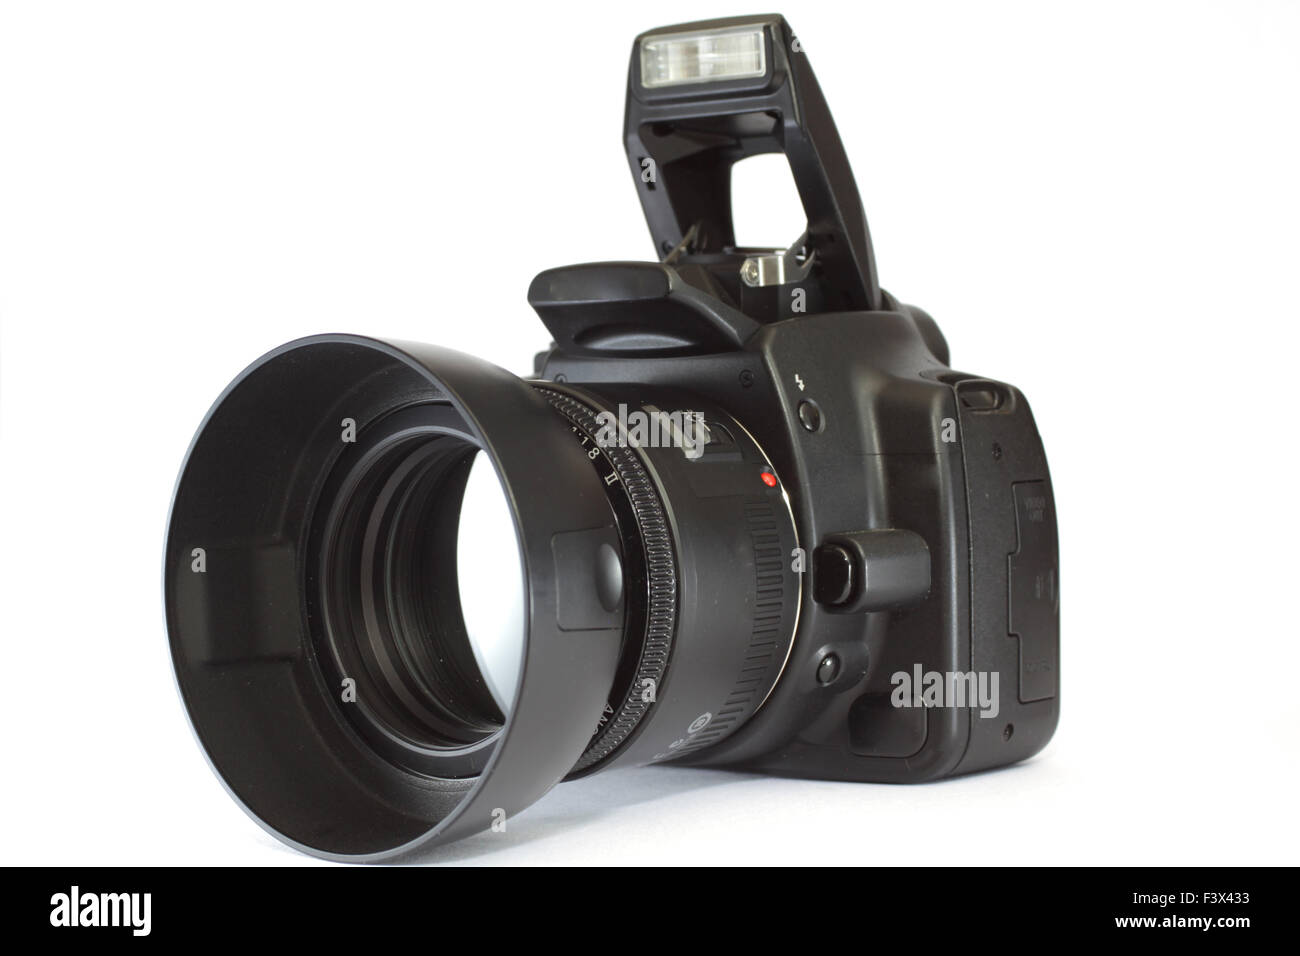 Una fotocamera reflex digitale Foto Stock